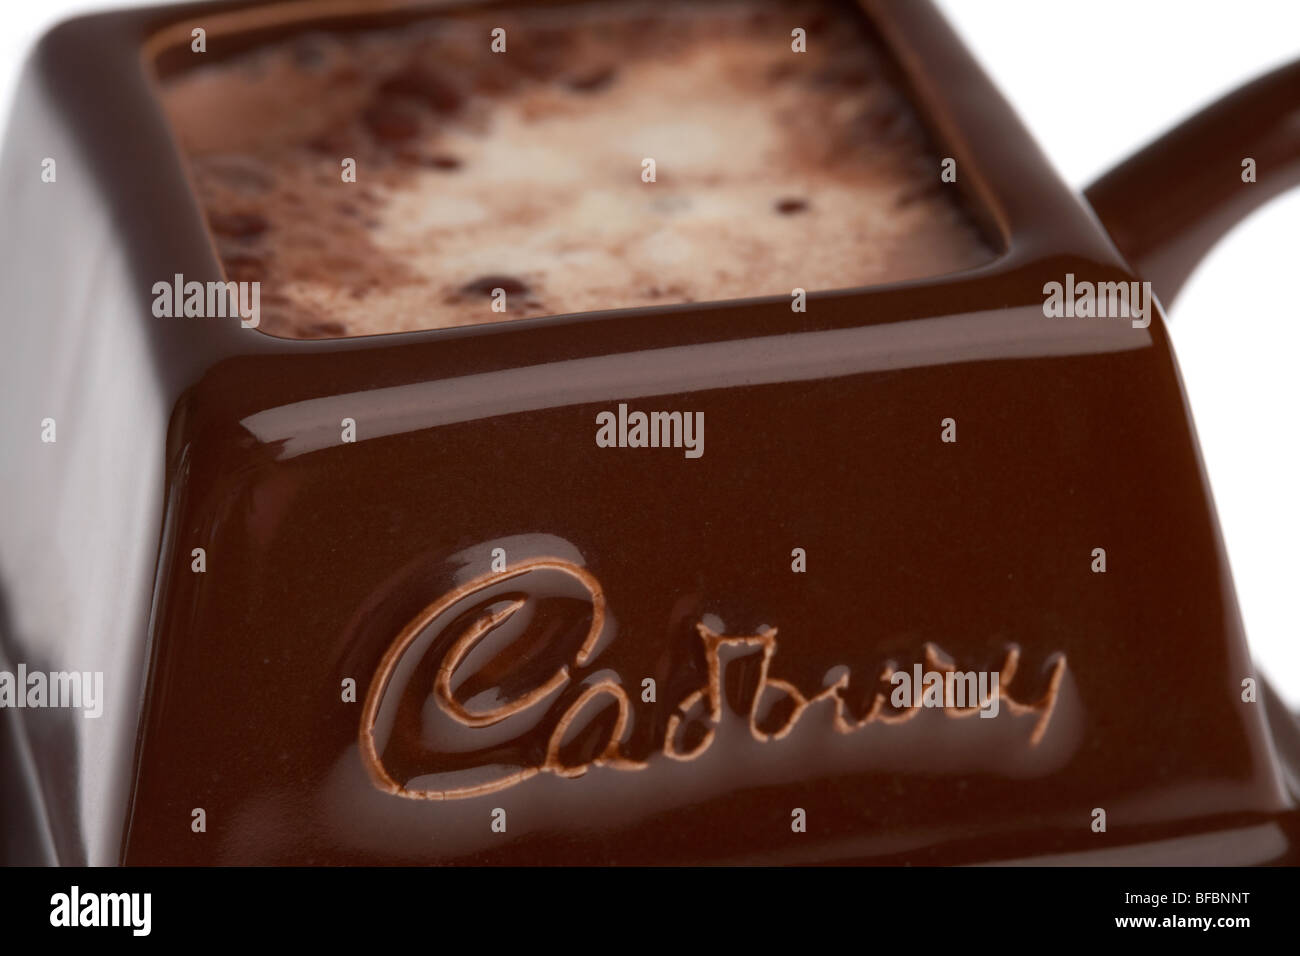 Cadburys tasse de chocolat en forme d'un bloc de chocolat pour chocolat potable studio shot Banque D'Images